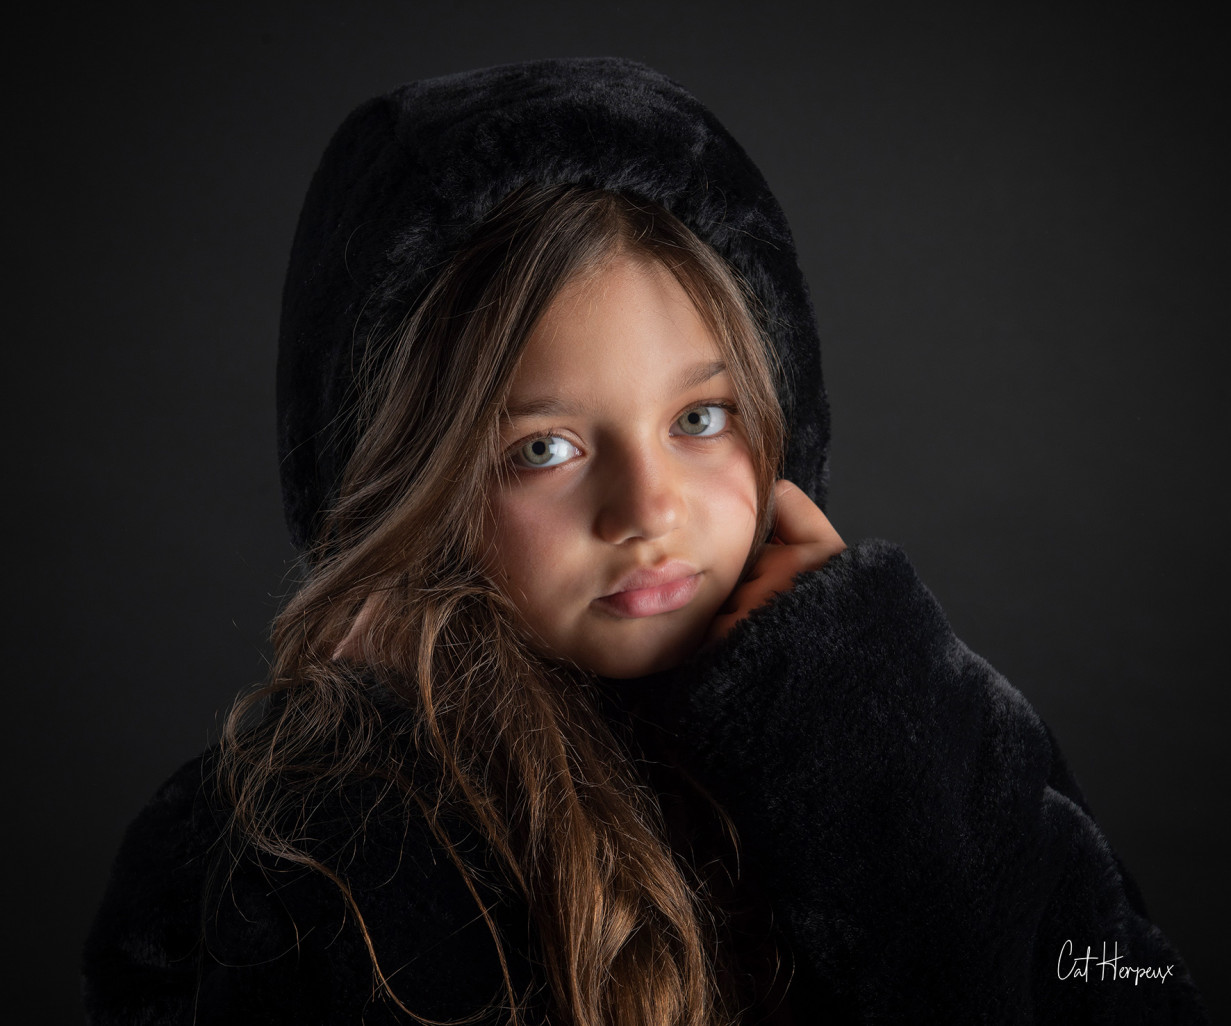 Catherine Herpeux réalise des portraits d’enfants qui sont à la fois uniques et particuliers. Crédit photo : Catherine Herpeux.